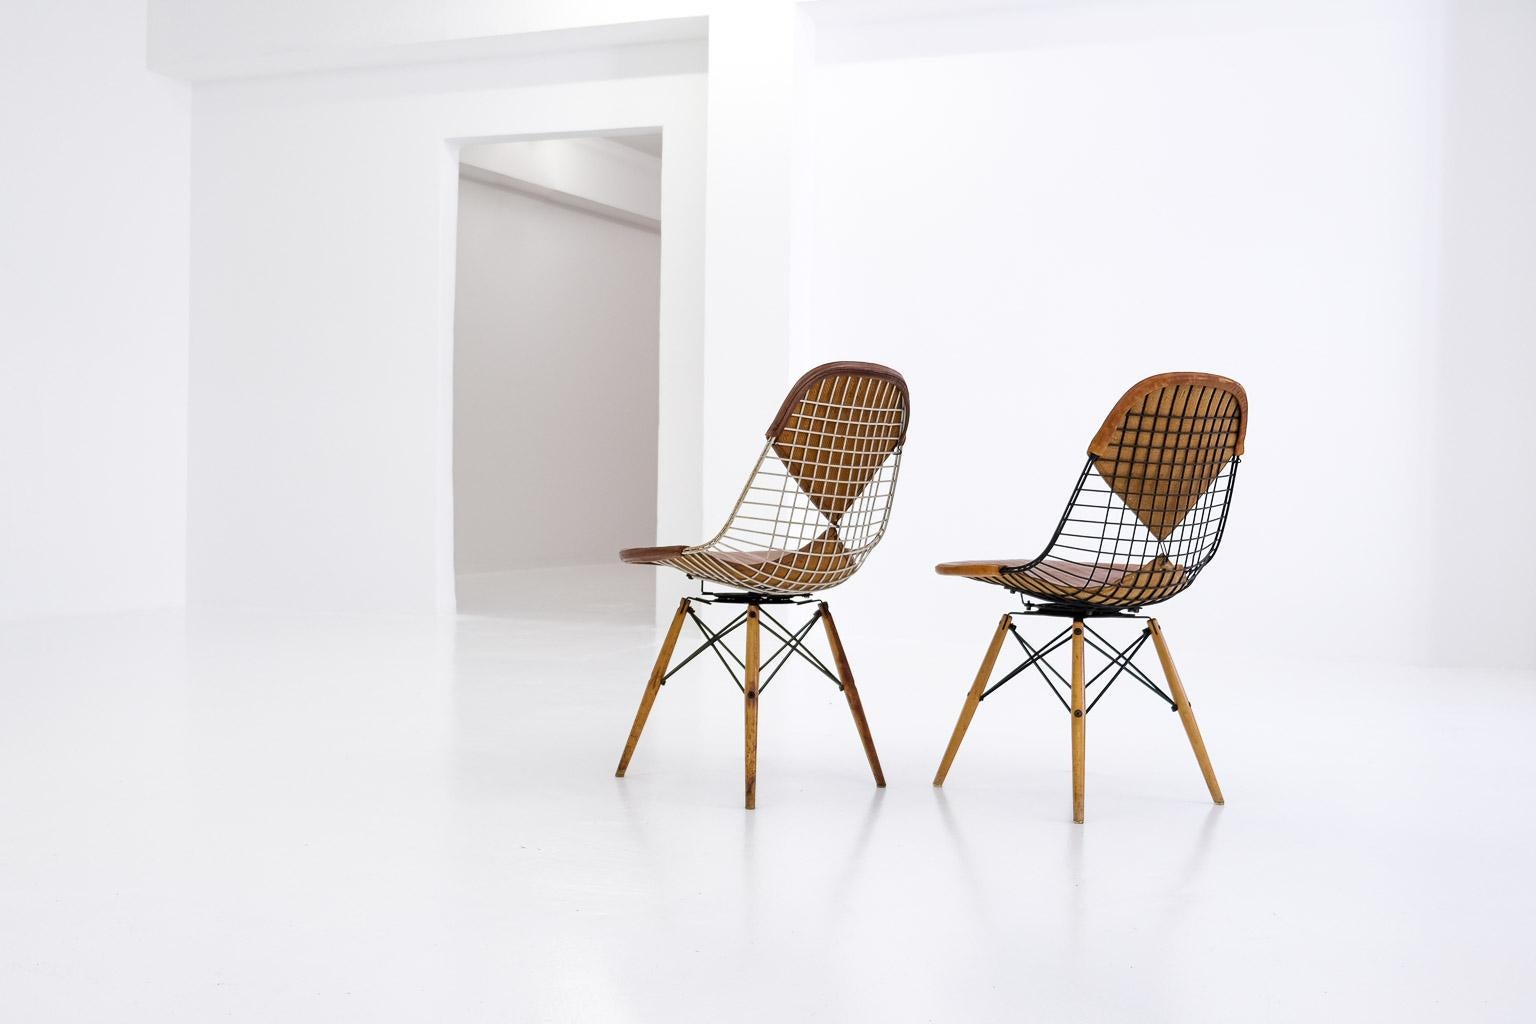 eames-stühle sind heute so weit verbreitet, dass man sie eigentlich schon viel zu oft gesehen hat. aber es gibt einige versionen, die etwas spezieller sind - und damit zu sammlerstücken werden. zum beispiel diese ray & charles eames side chairs